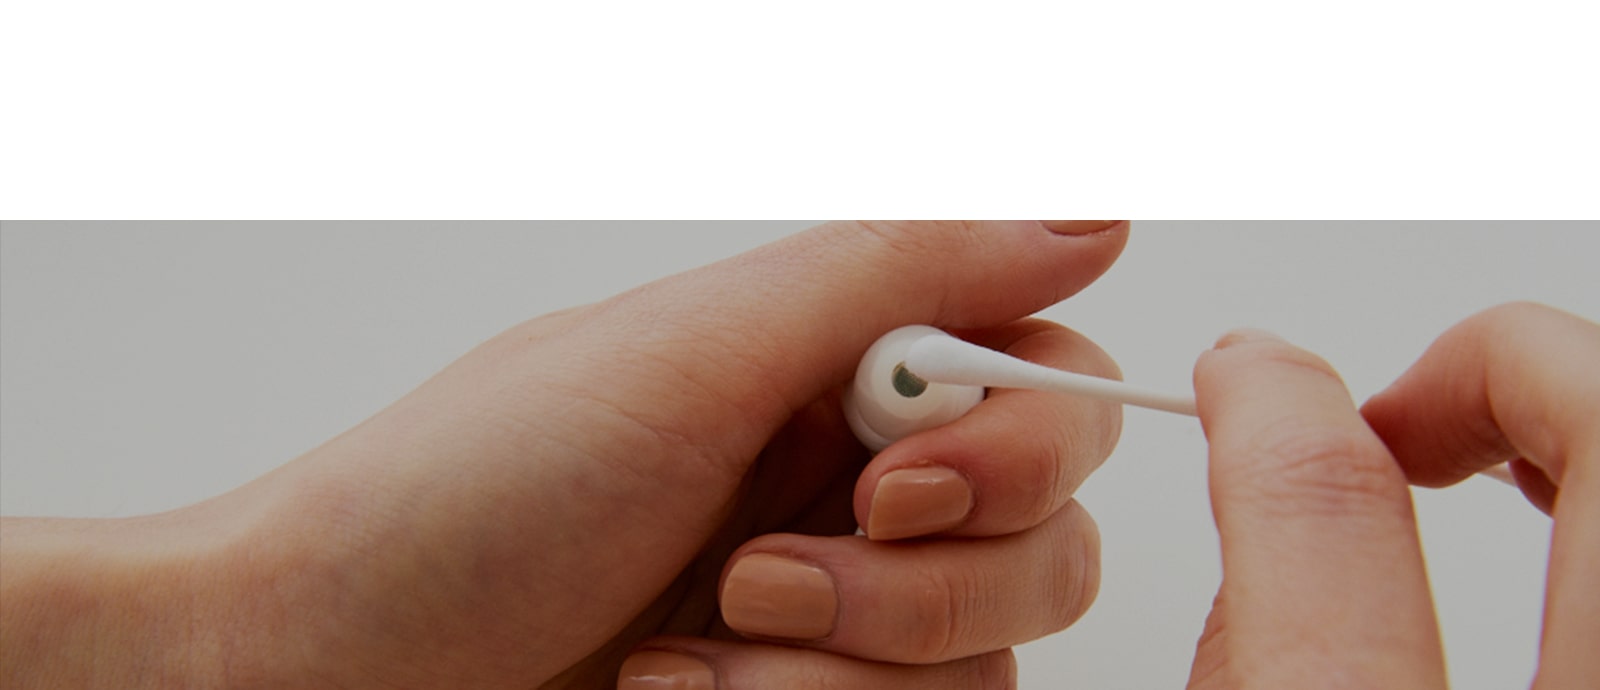 Obraz przedstawiający słuchawki w ręku, które ktoś czyści za pomocą bawełnianego wacika. Uświadamia szkodliwość bakterii znajdujących się na słuchawkach.